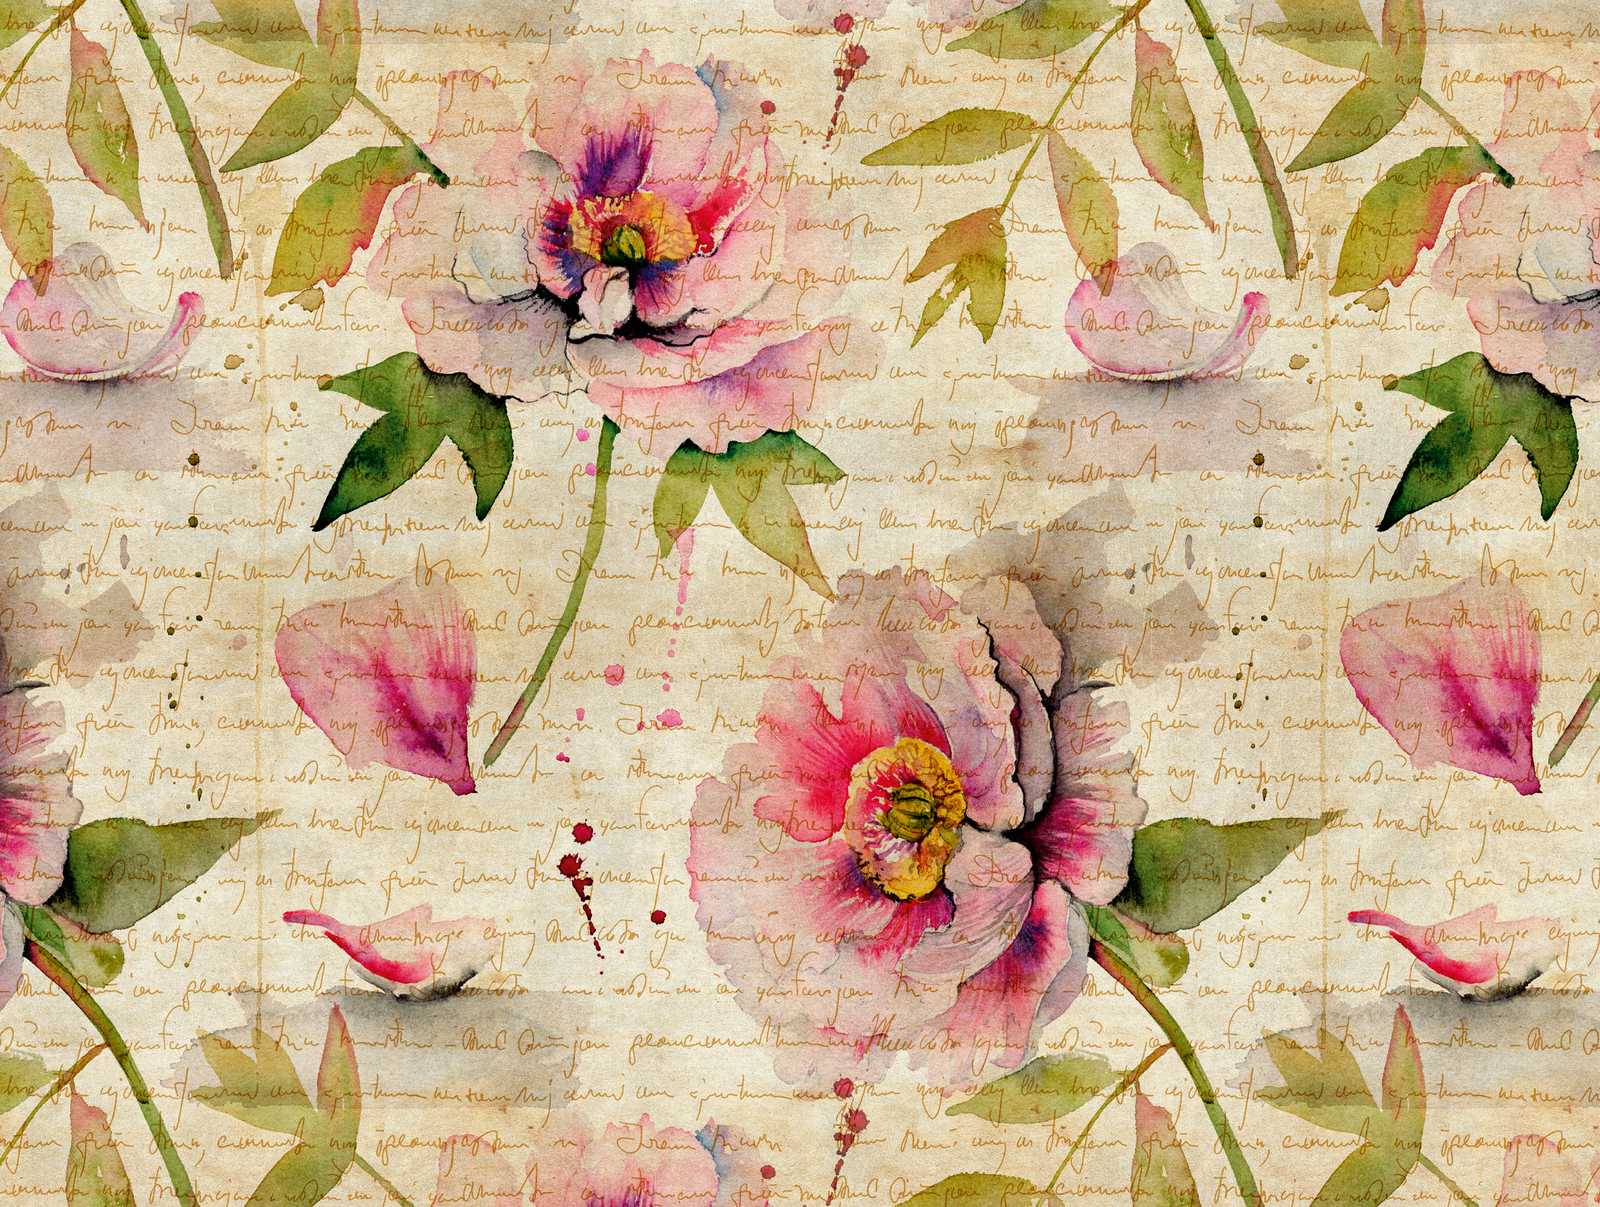             Nouveauté papier peint - Roses papier peint à motifs Vintage & Cottage Core style
        